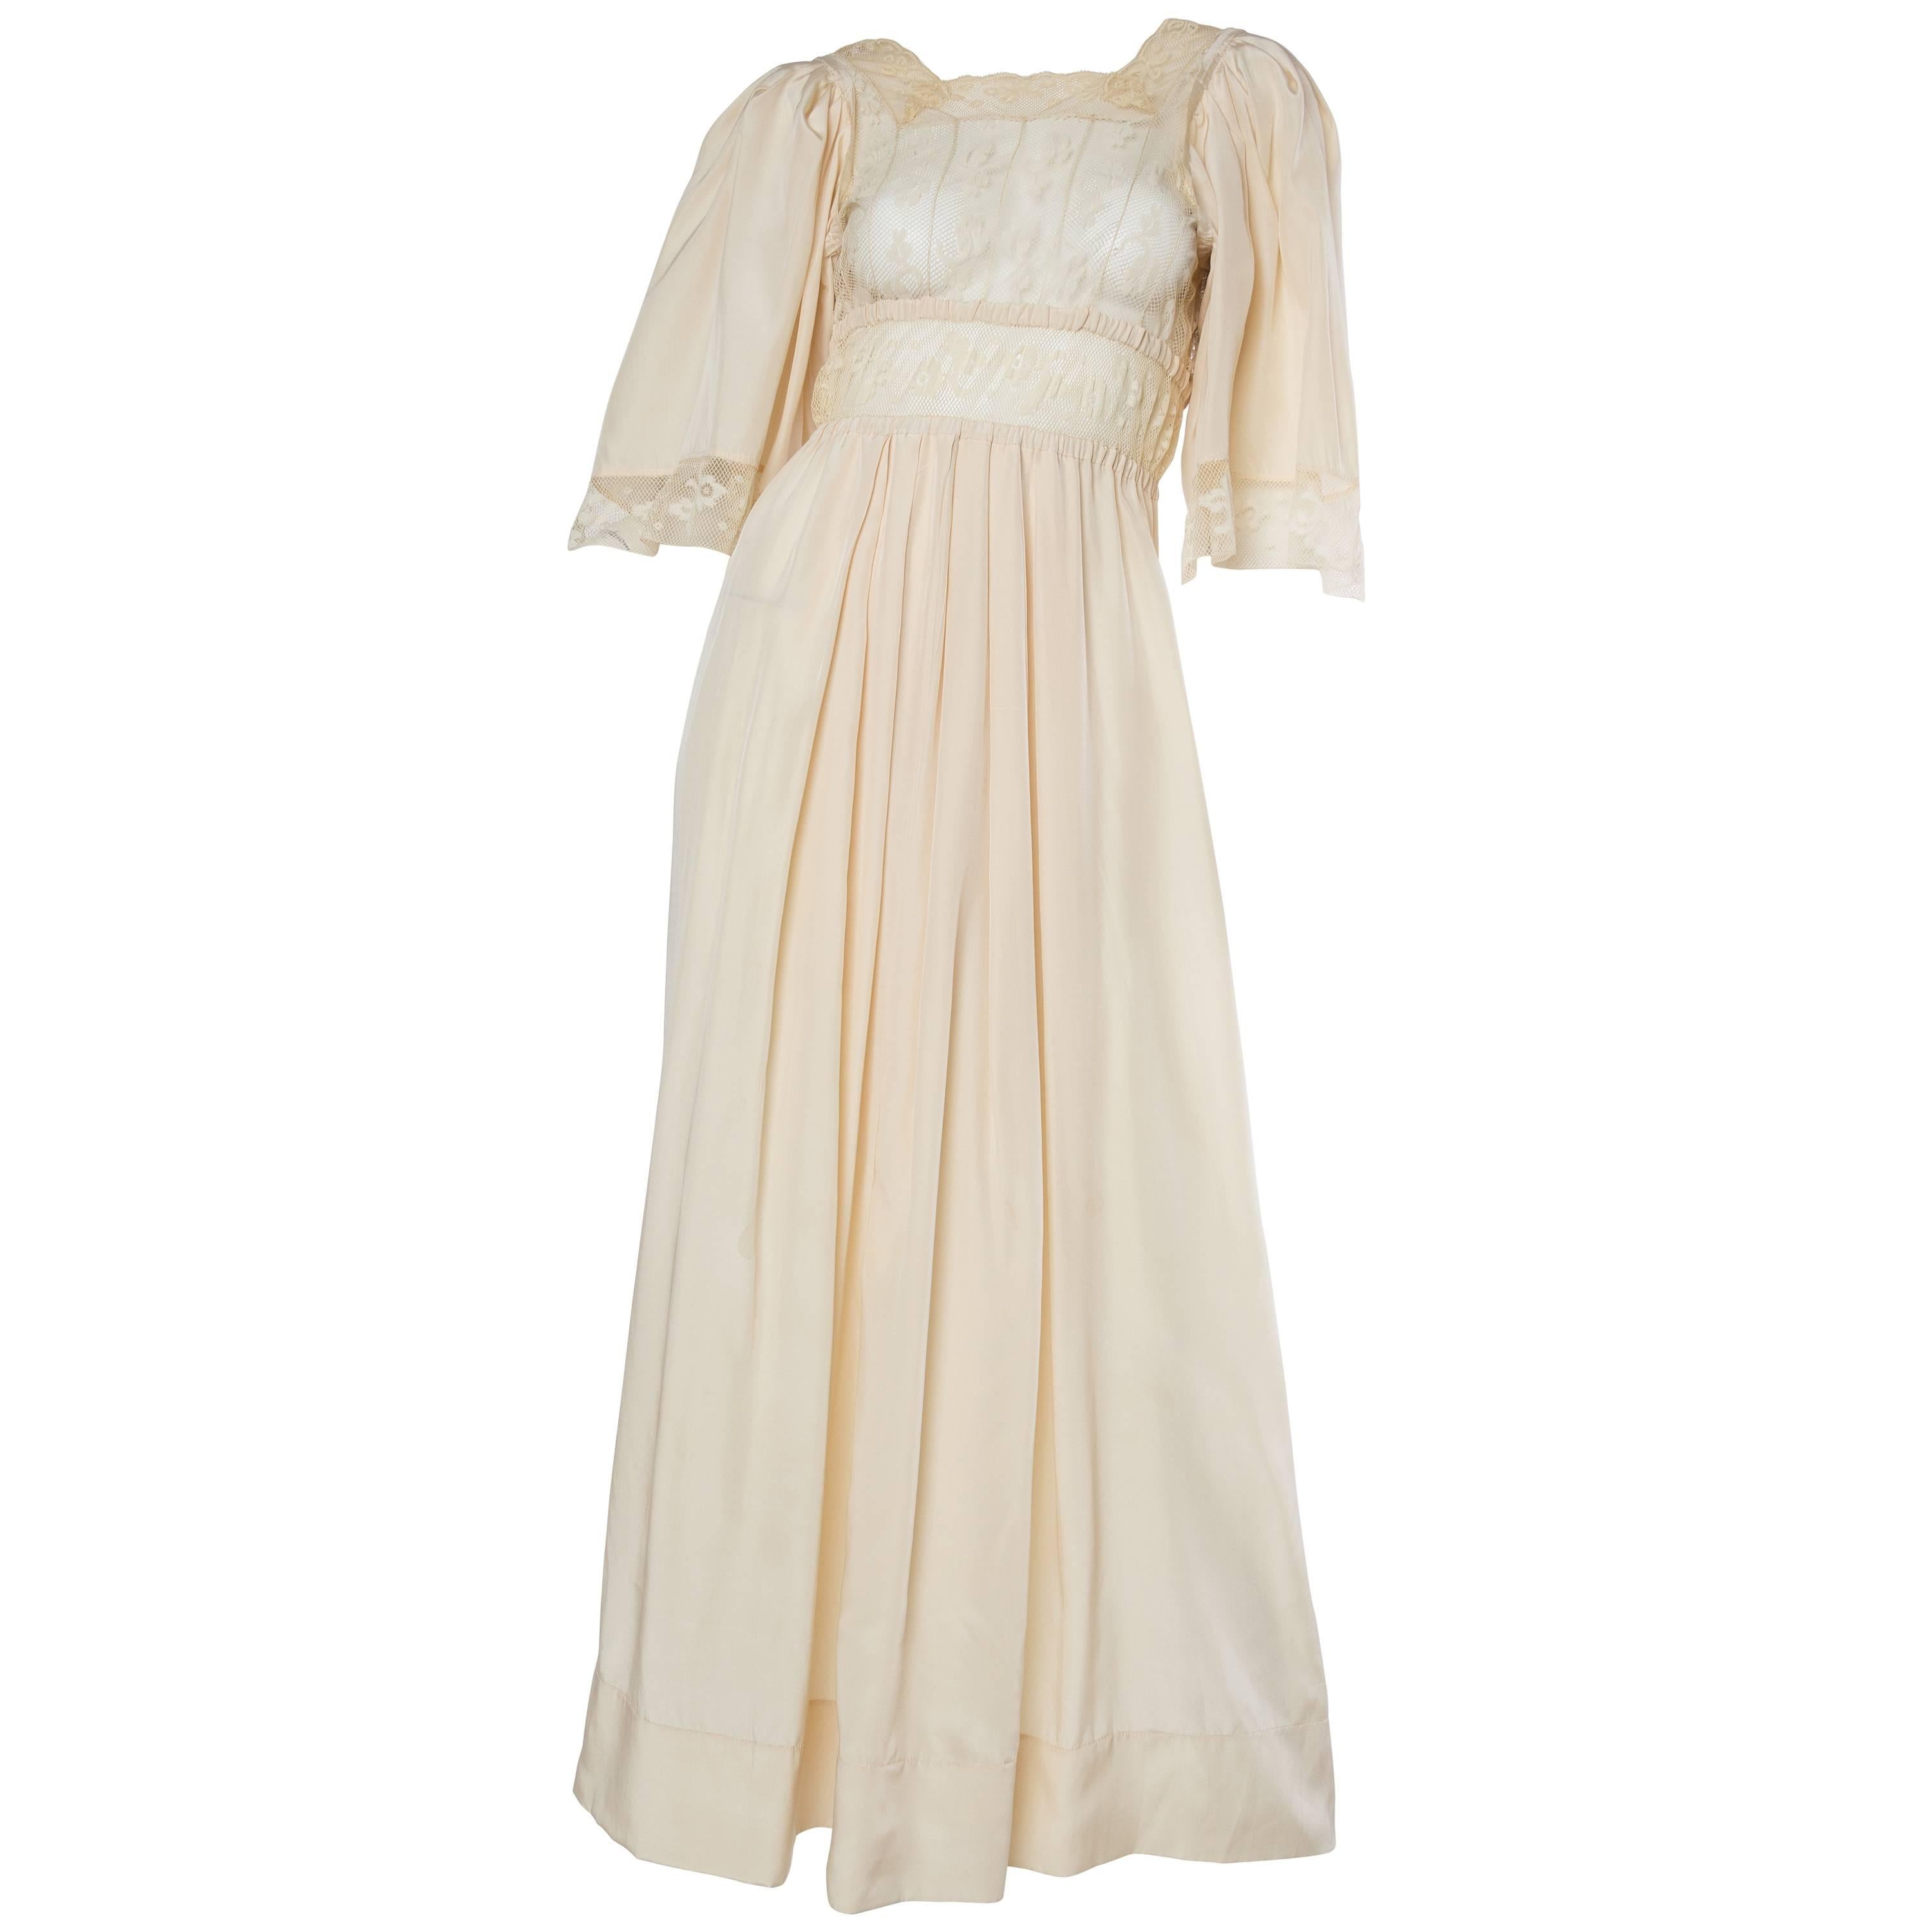 Edwardian Silk and Lace Negligee Dress